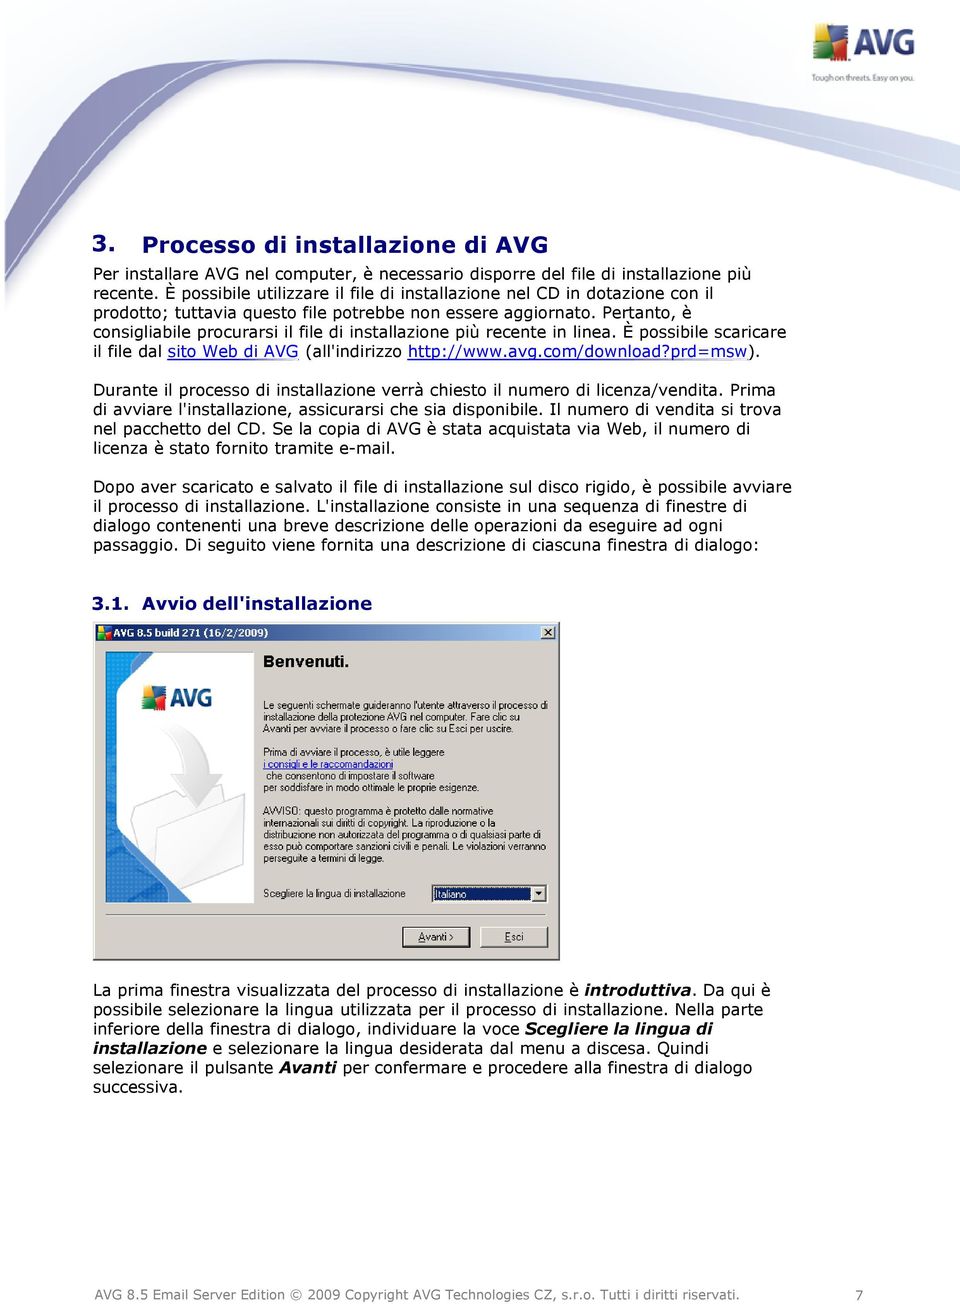 Pertanto, è consigliabile procurarsi il file di installazione più recente in linea. È possibile scaricare il file dal sito Web di AVG (all'indirizzo http://www.avg.com/download?prd=msw).